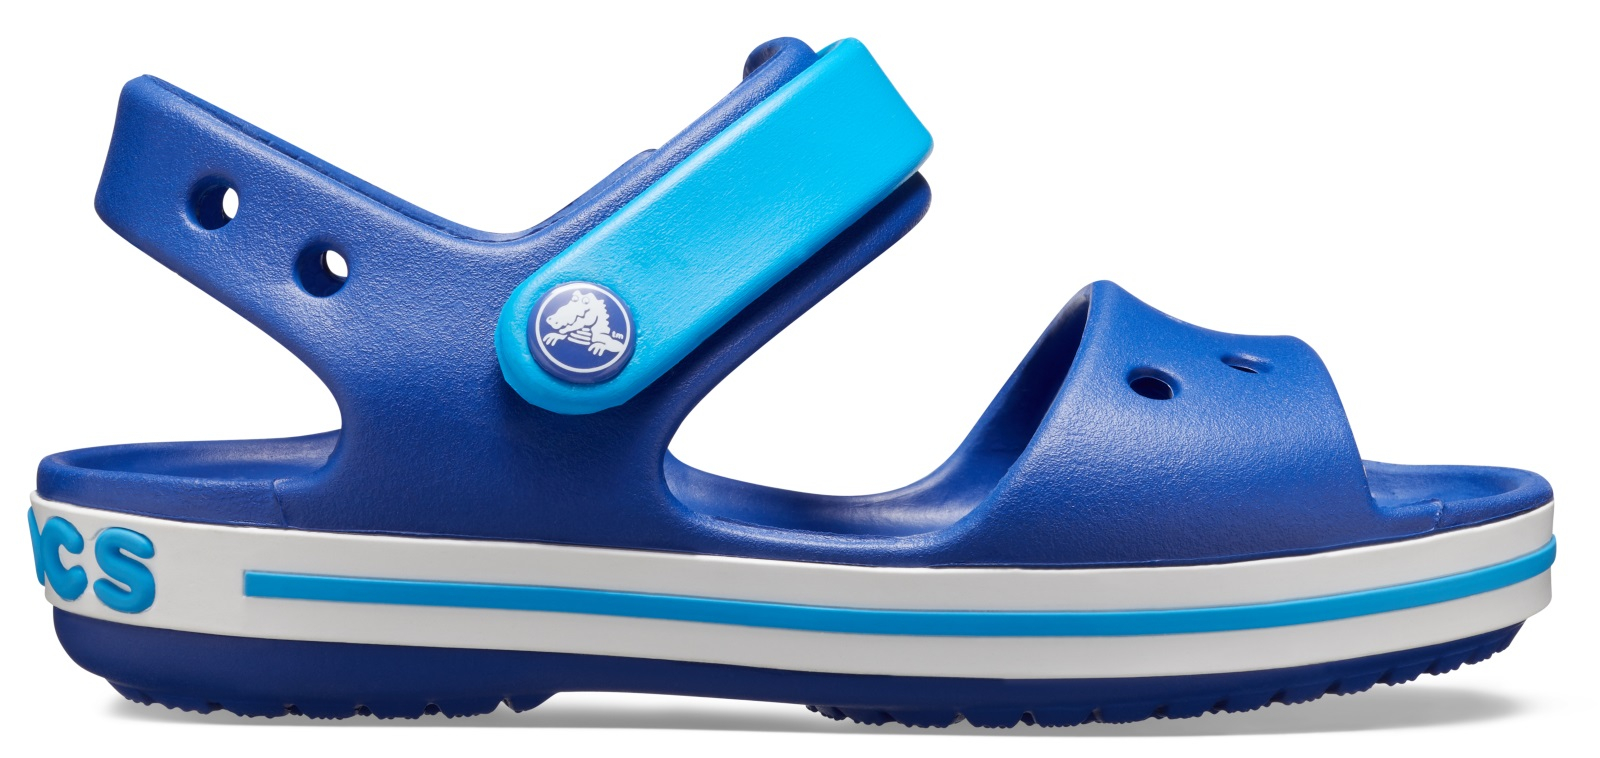 Dětské sandály Crocs CROCBAND tmavě modrá/modrá 30-31